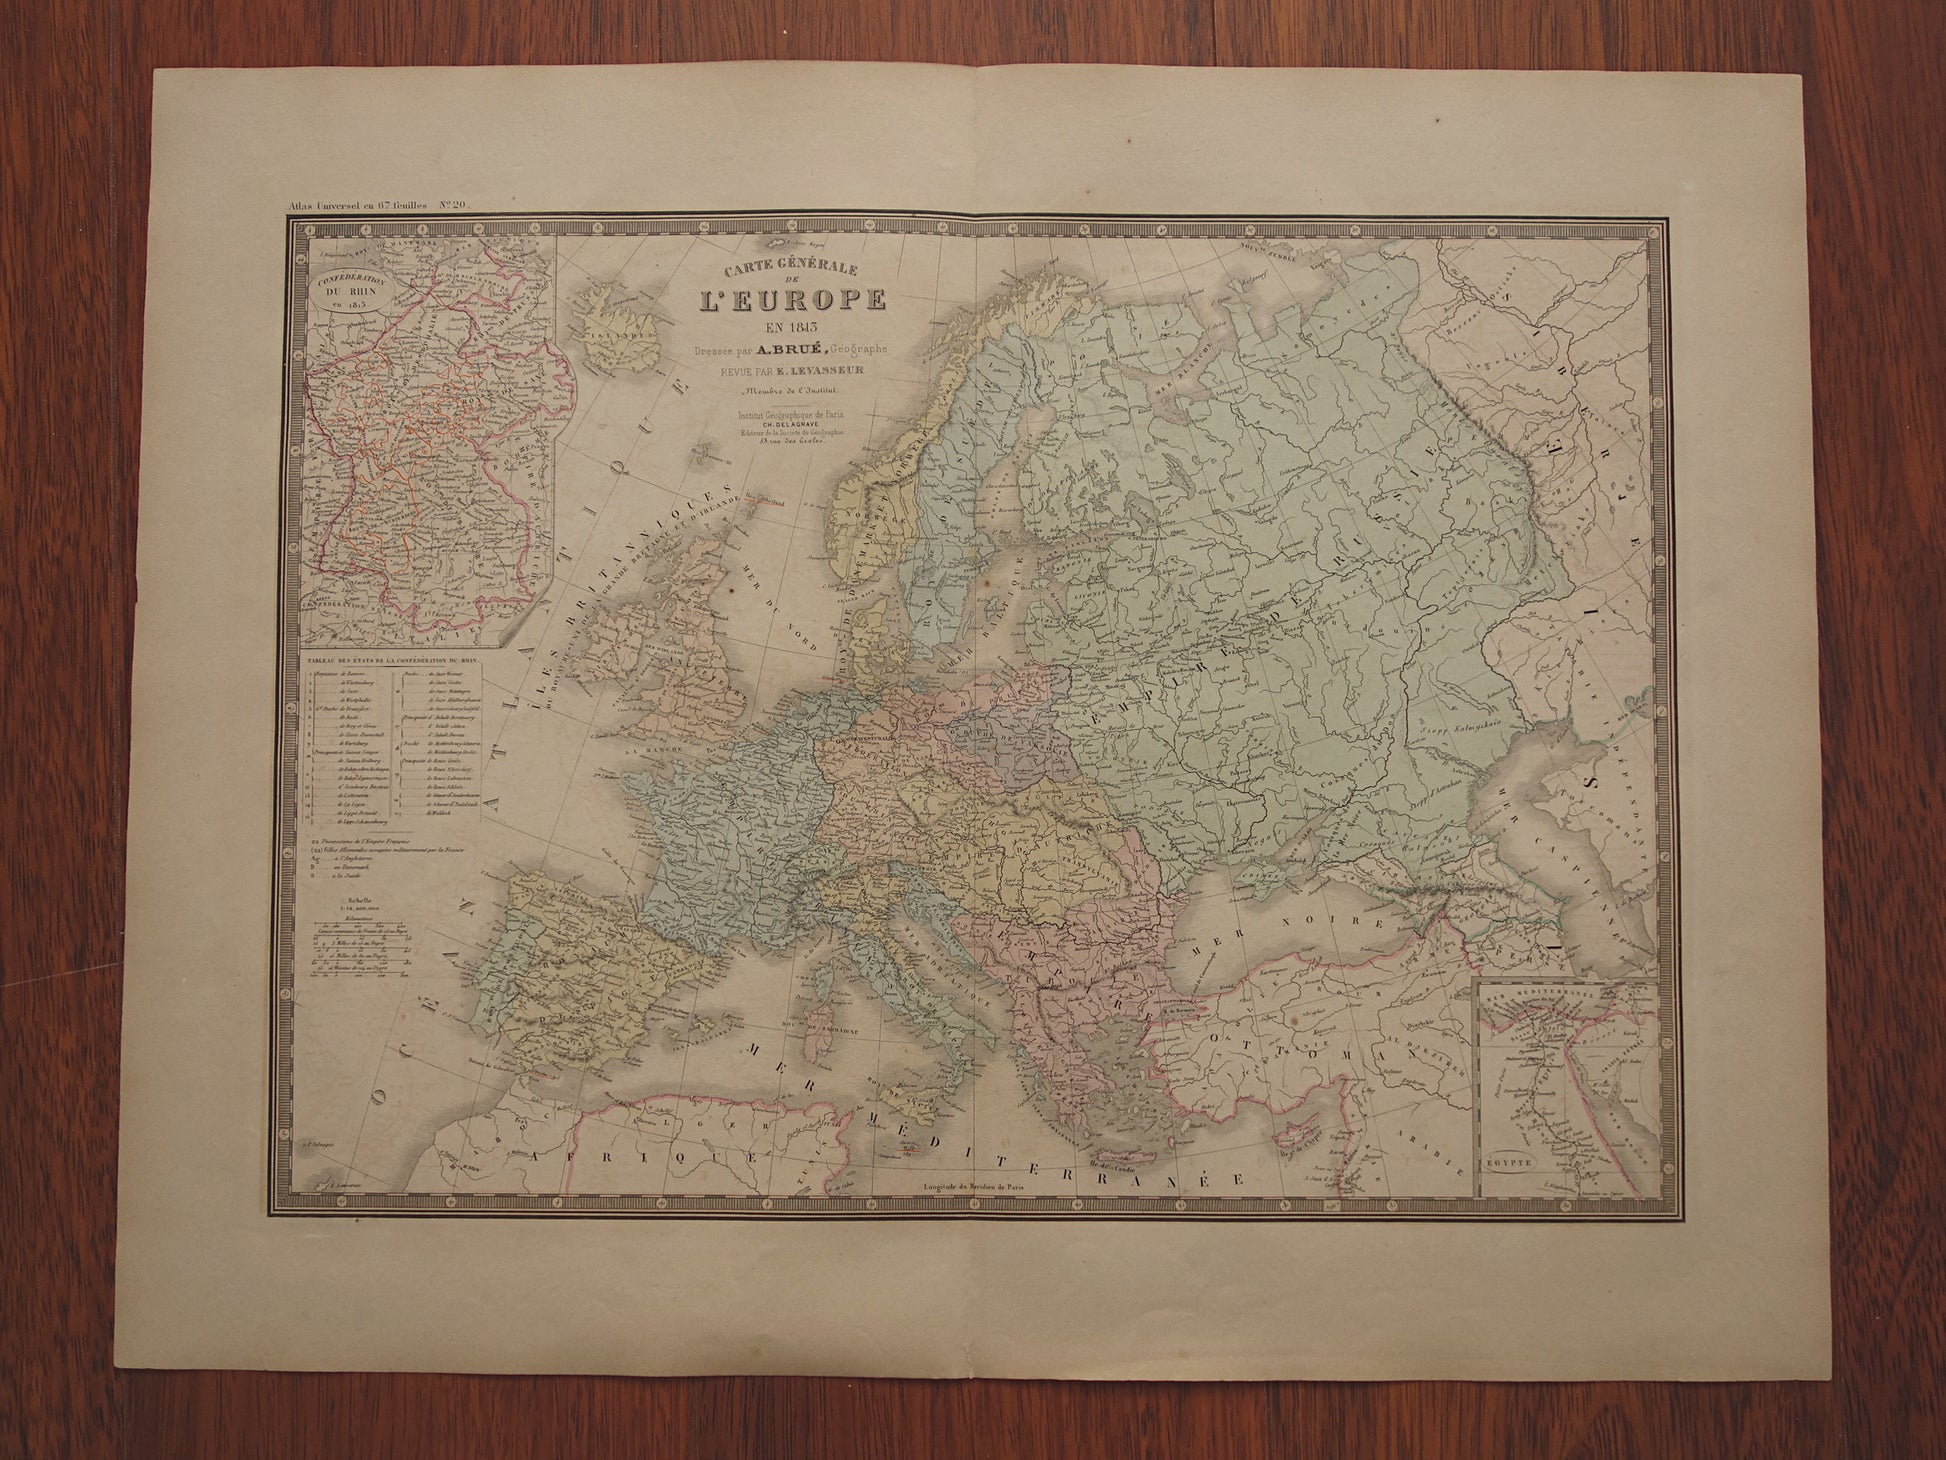 Europa in 1813 grote oude landkaart uit 1876 van Europa aan einde Franse revolutie historische kaarten